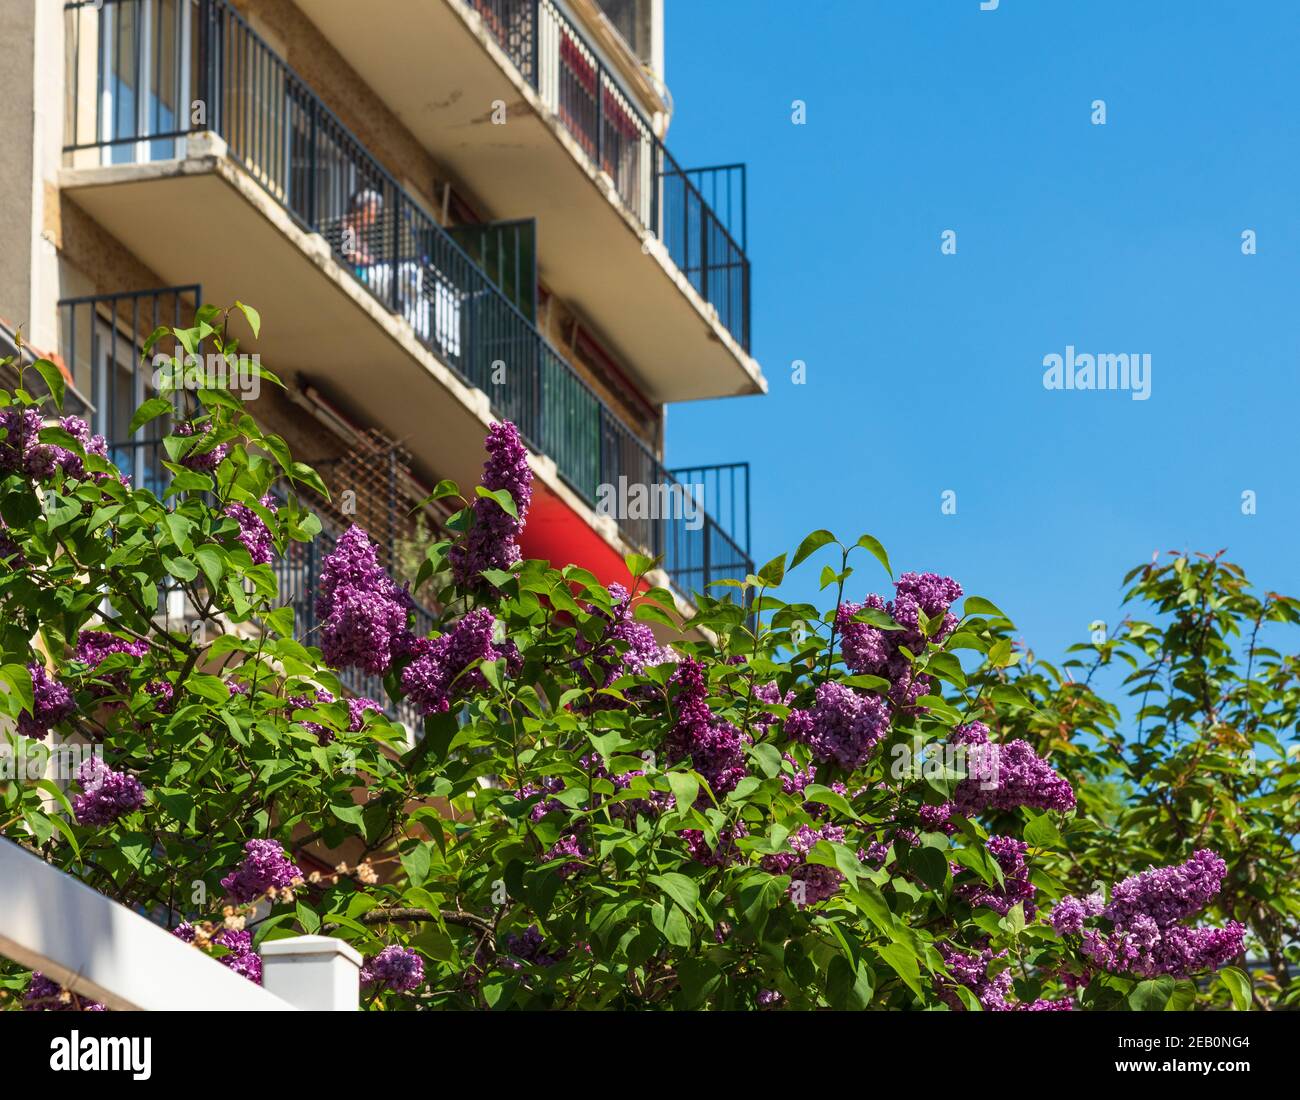 Donna anziana appeso i vestiti ad asciugare al balcone alla luce del sole. Sobborgo parigino, Francia. Casalinghi, casalinghi, pulizie di fondo. Anziani wellbei Foto Stock